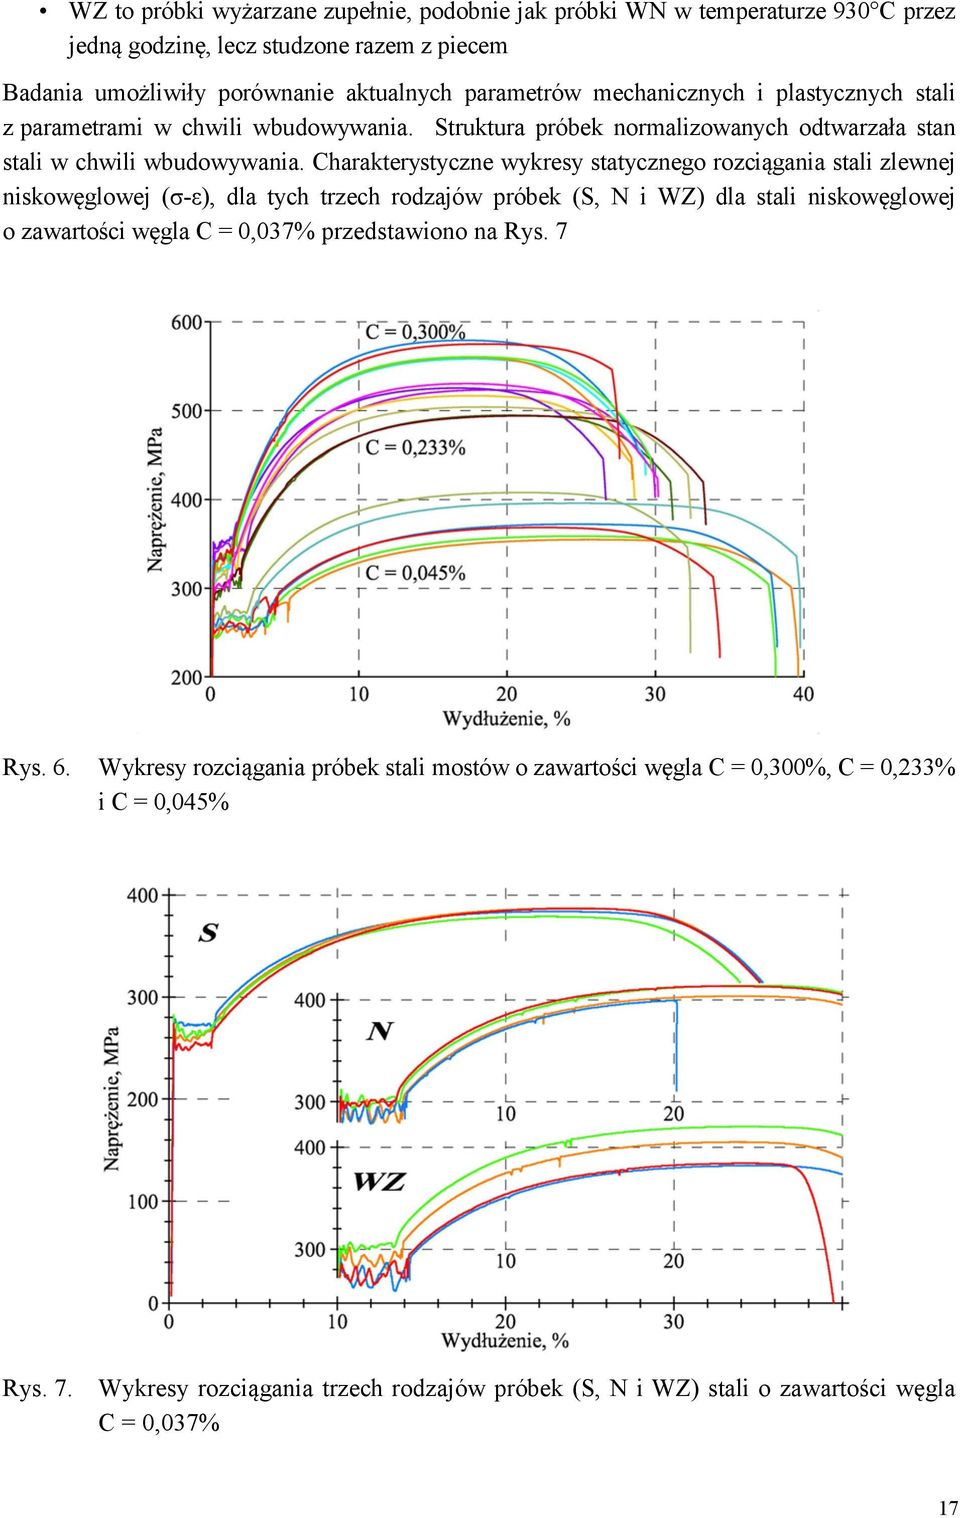 Charakterystyczne wykresy statycznego rozciągania stali zlewnej niskowęglowej (σ-ε), dla tych trzech rodzajów próbek (S, N i WZ) dla stali niskowęglowej o zawartości węgla C = 0,037%